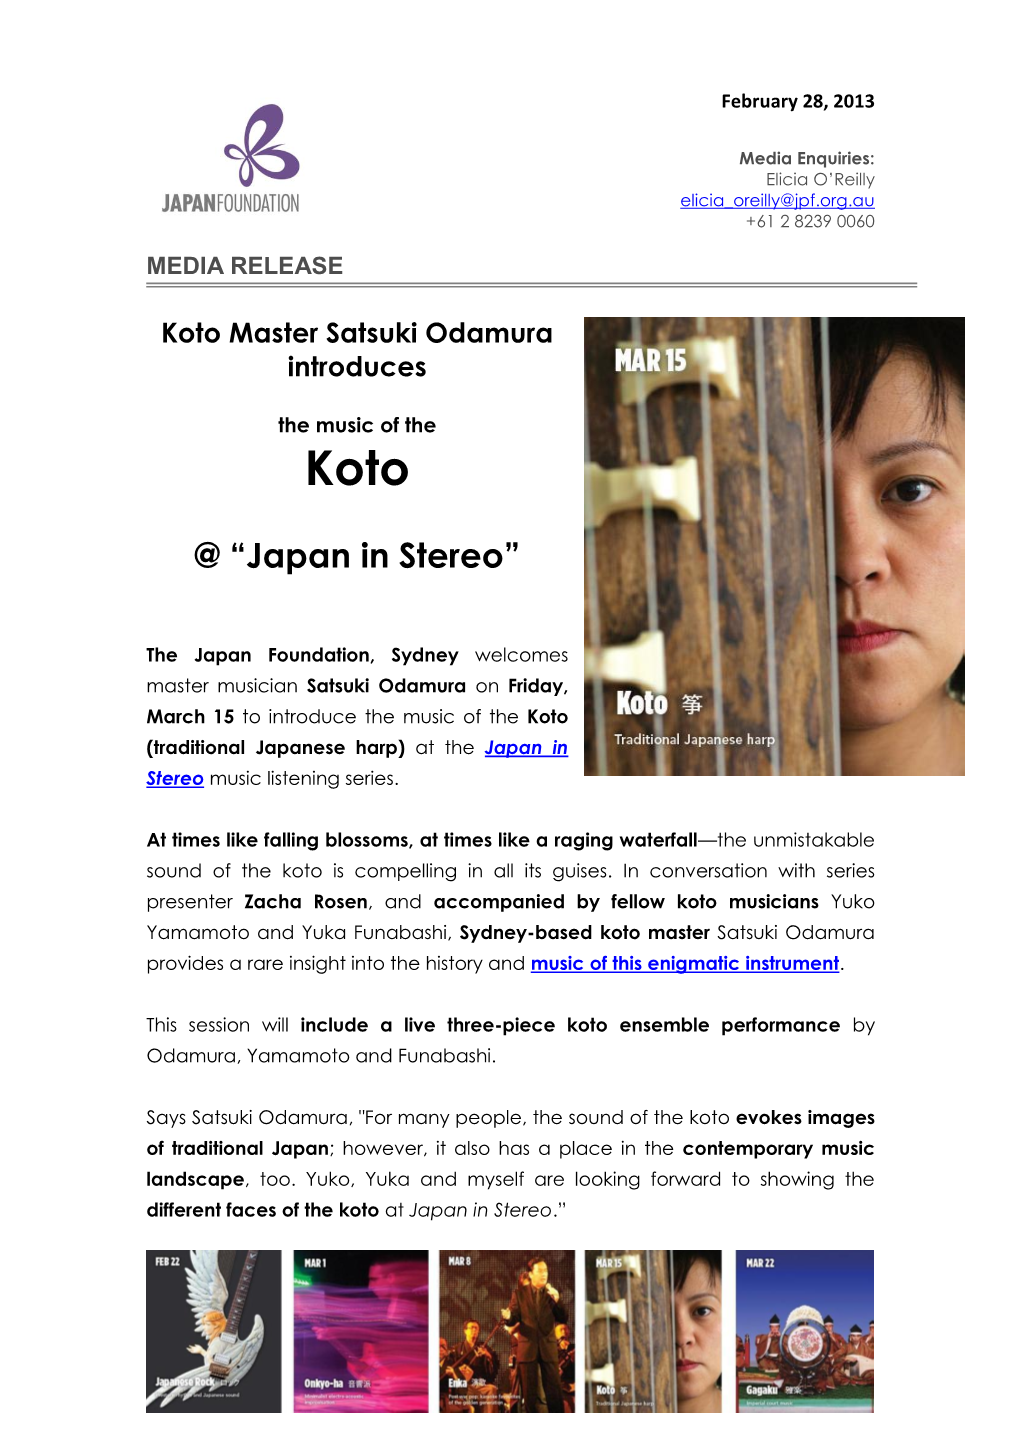 Japan in Stereo: Koto